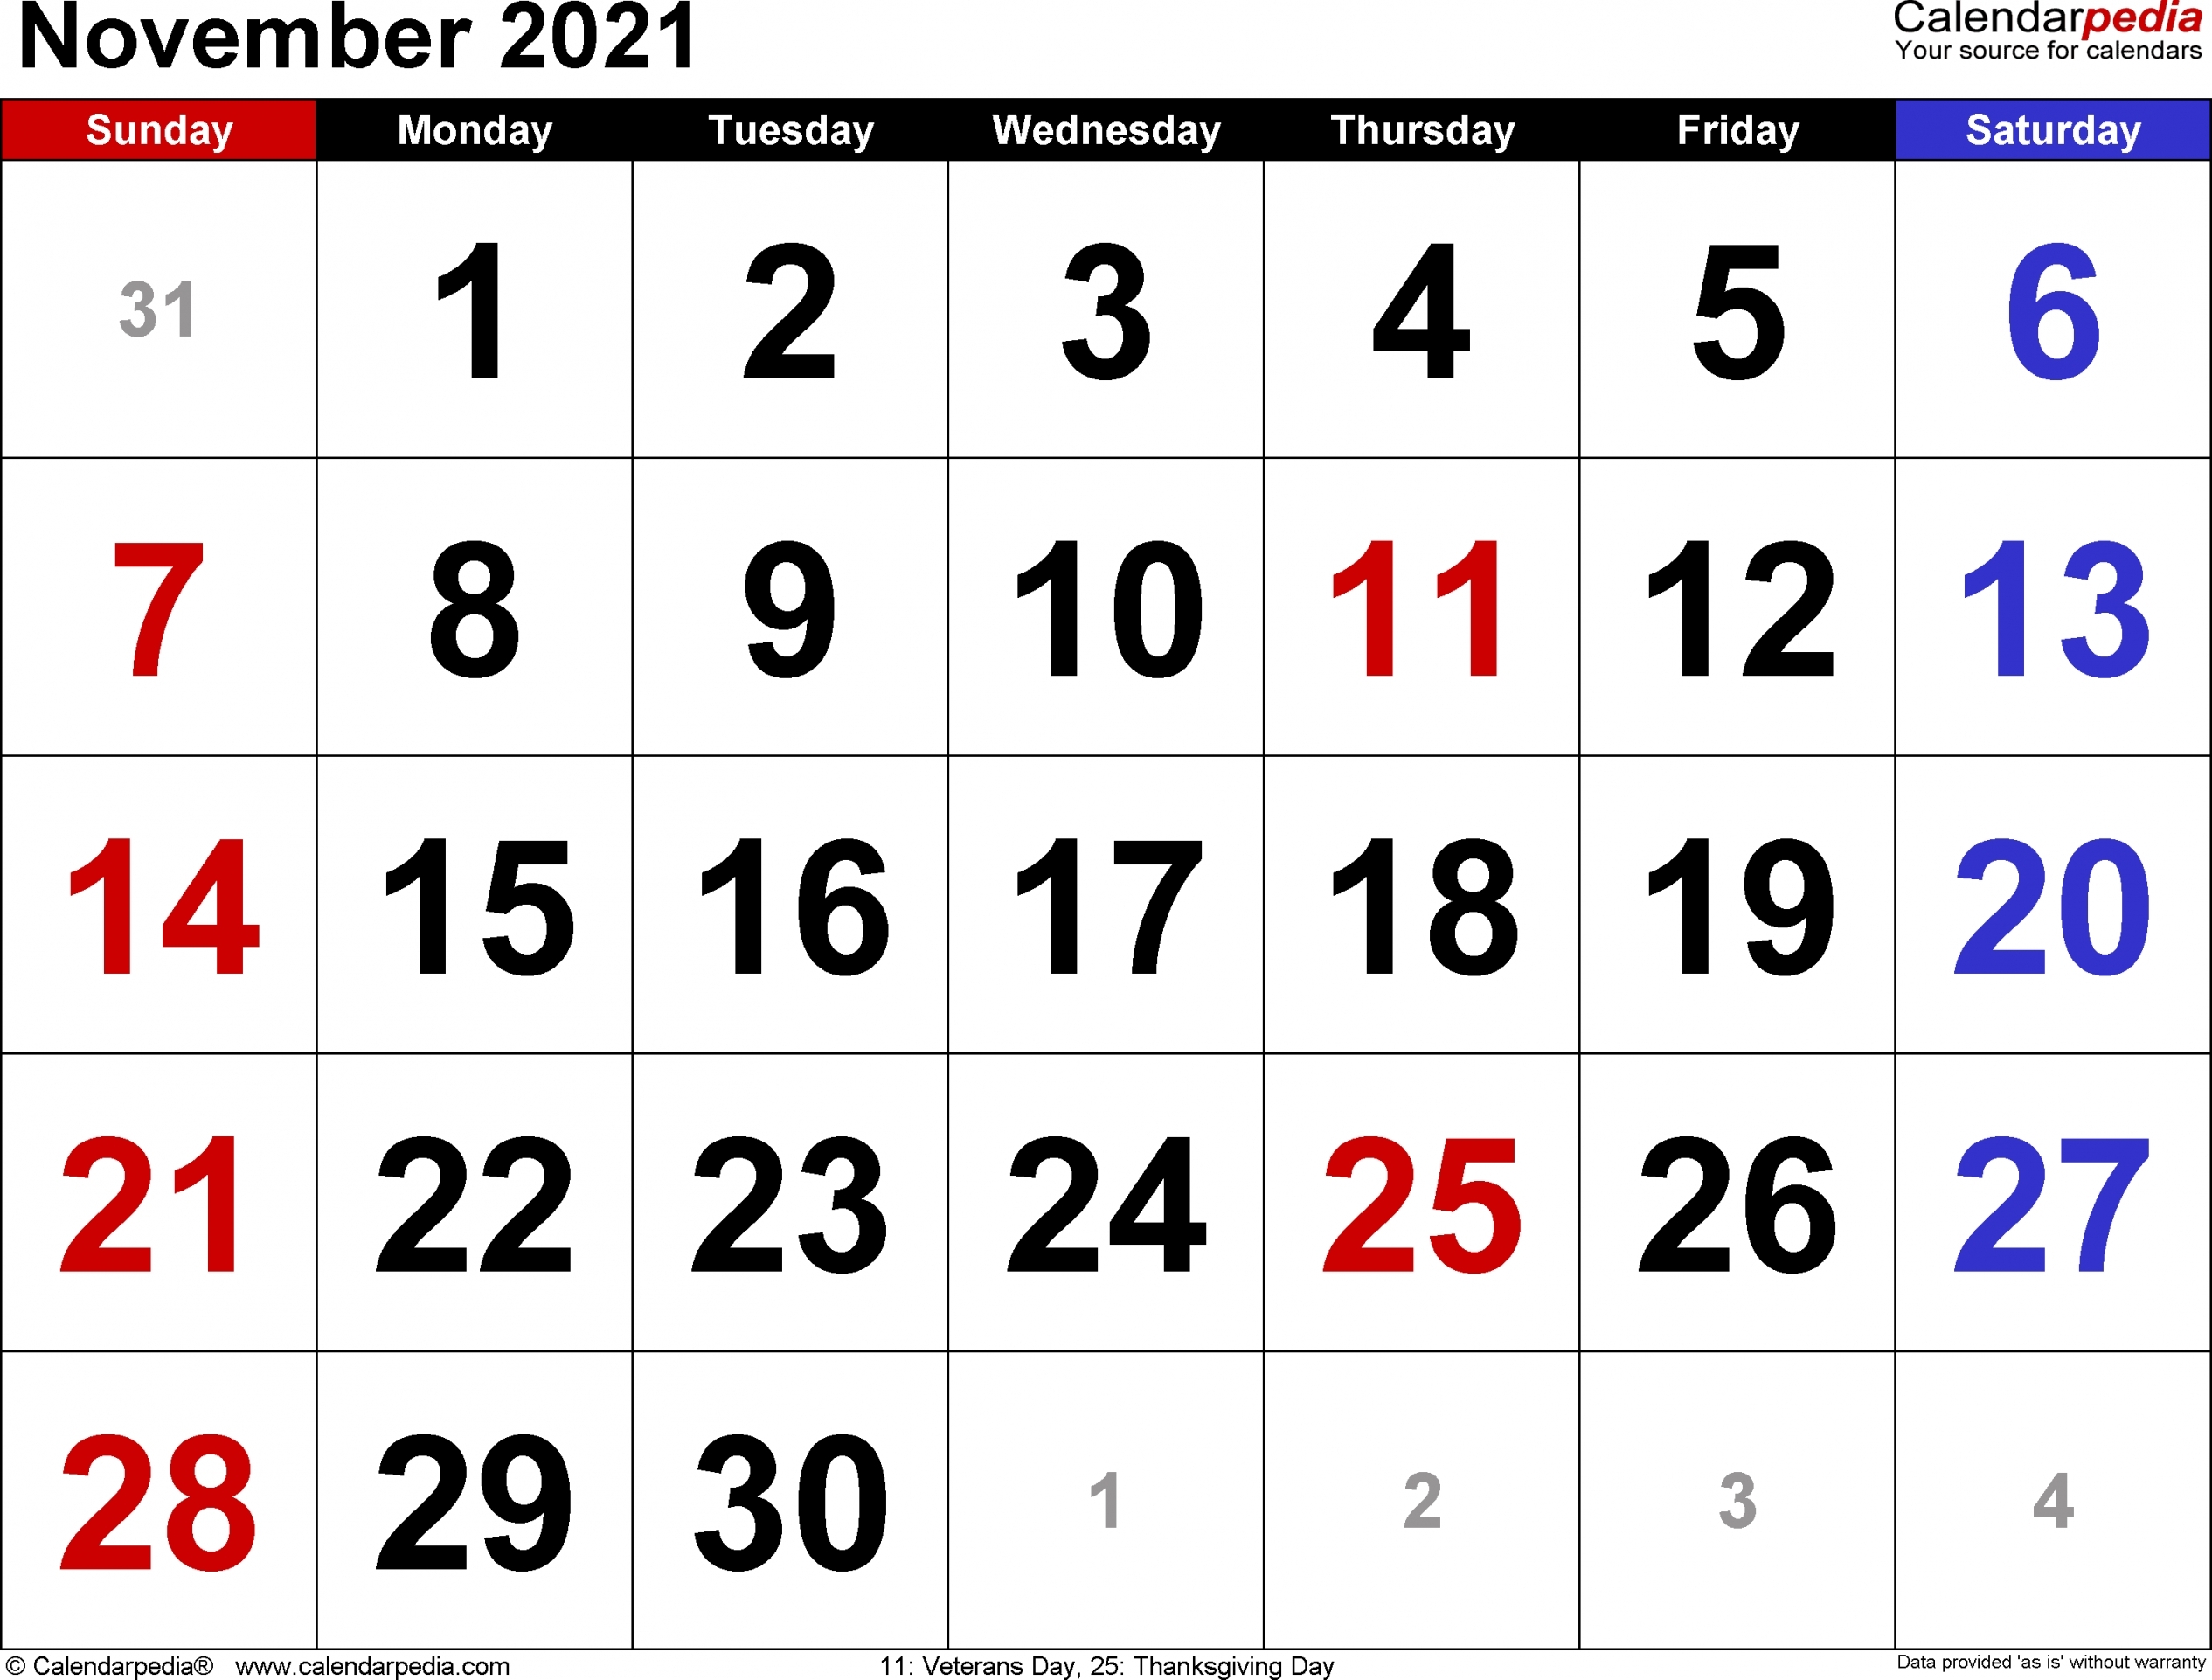 2021 November Calendar Printable | Free Letter Templates November 2021 Calendar Printable